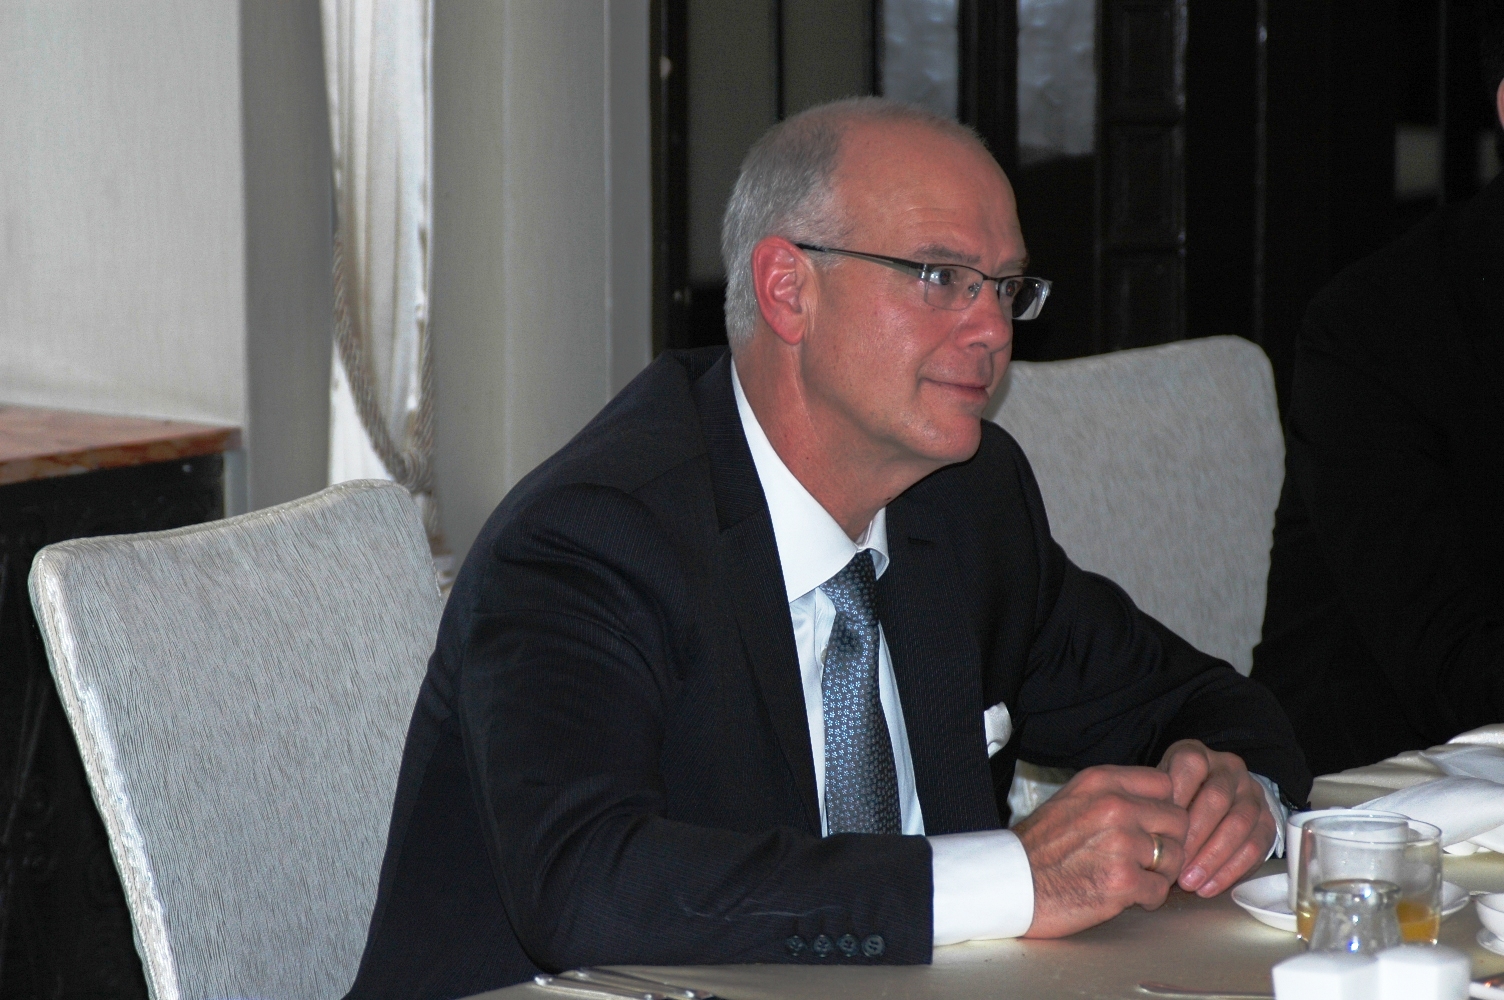 2012年10月21日: 与加拿大BC省驻上海办事处 主任Mr.John MacDonald, BCTIO 在上海和平饭店共进工作早餐。